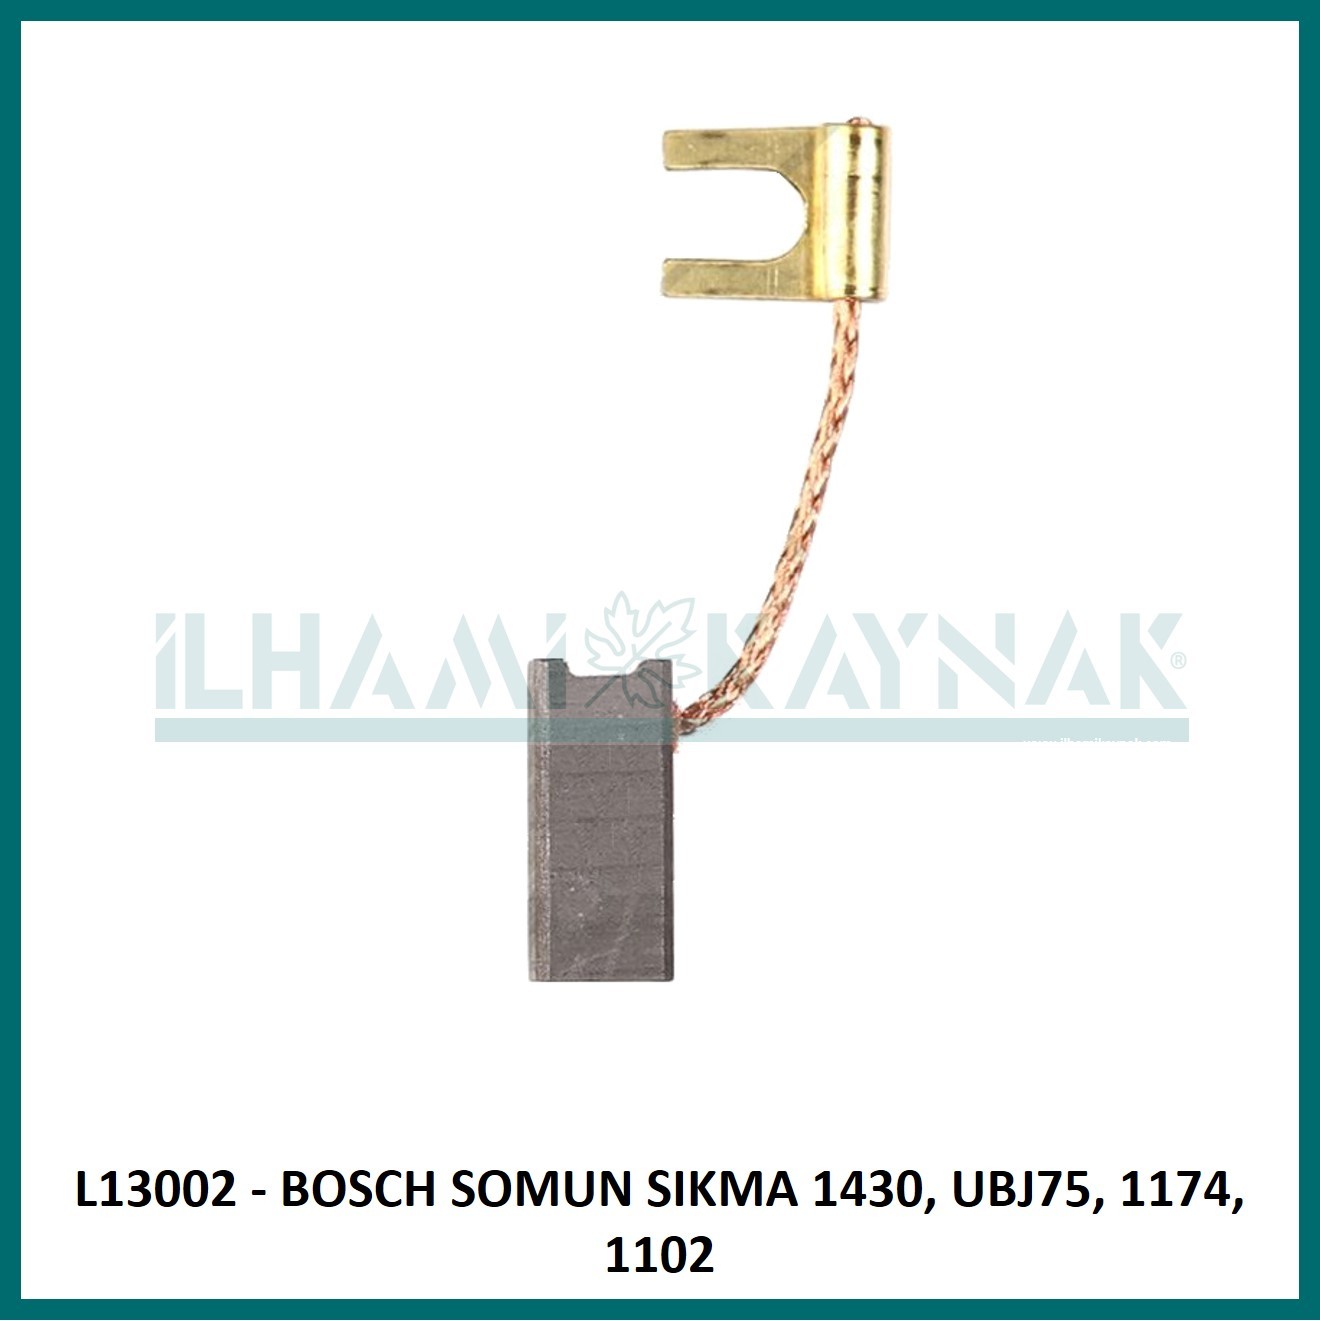 L13002 - BOSCH SOMUN SIKMA 1430, UBJ75, 1174, 1102 - 6.3*6.3*20 mm - 100 Adet